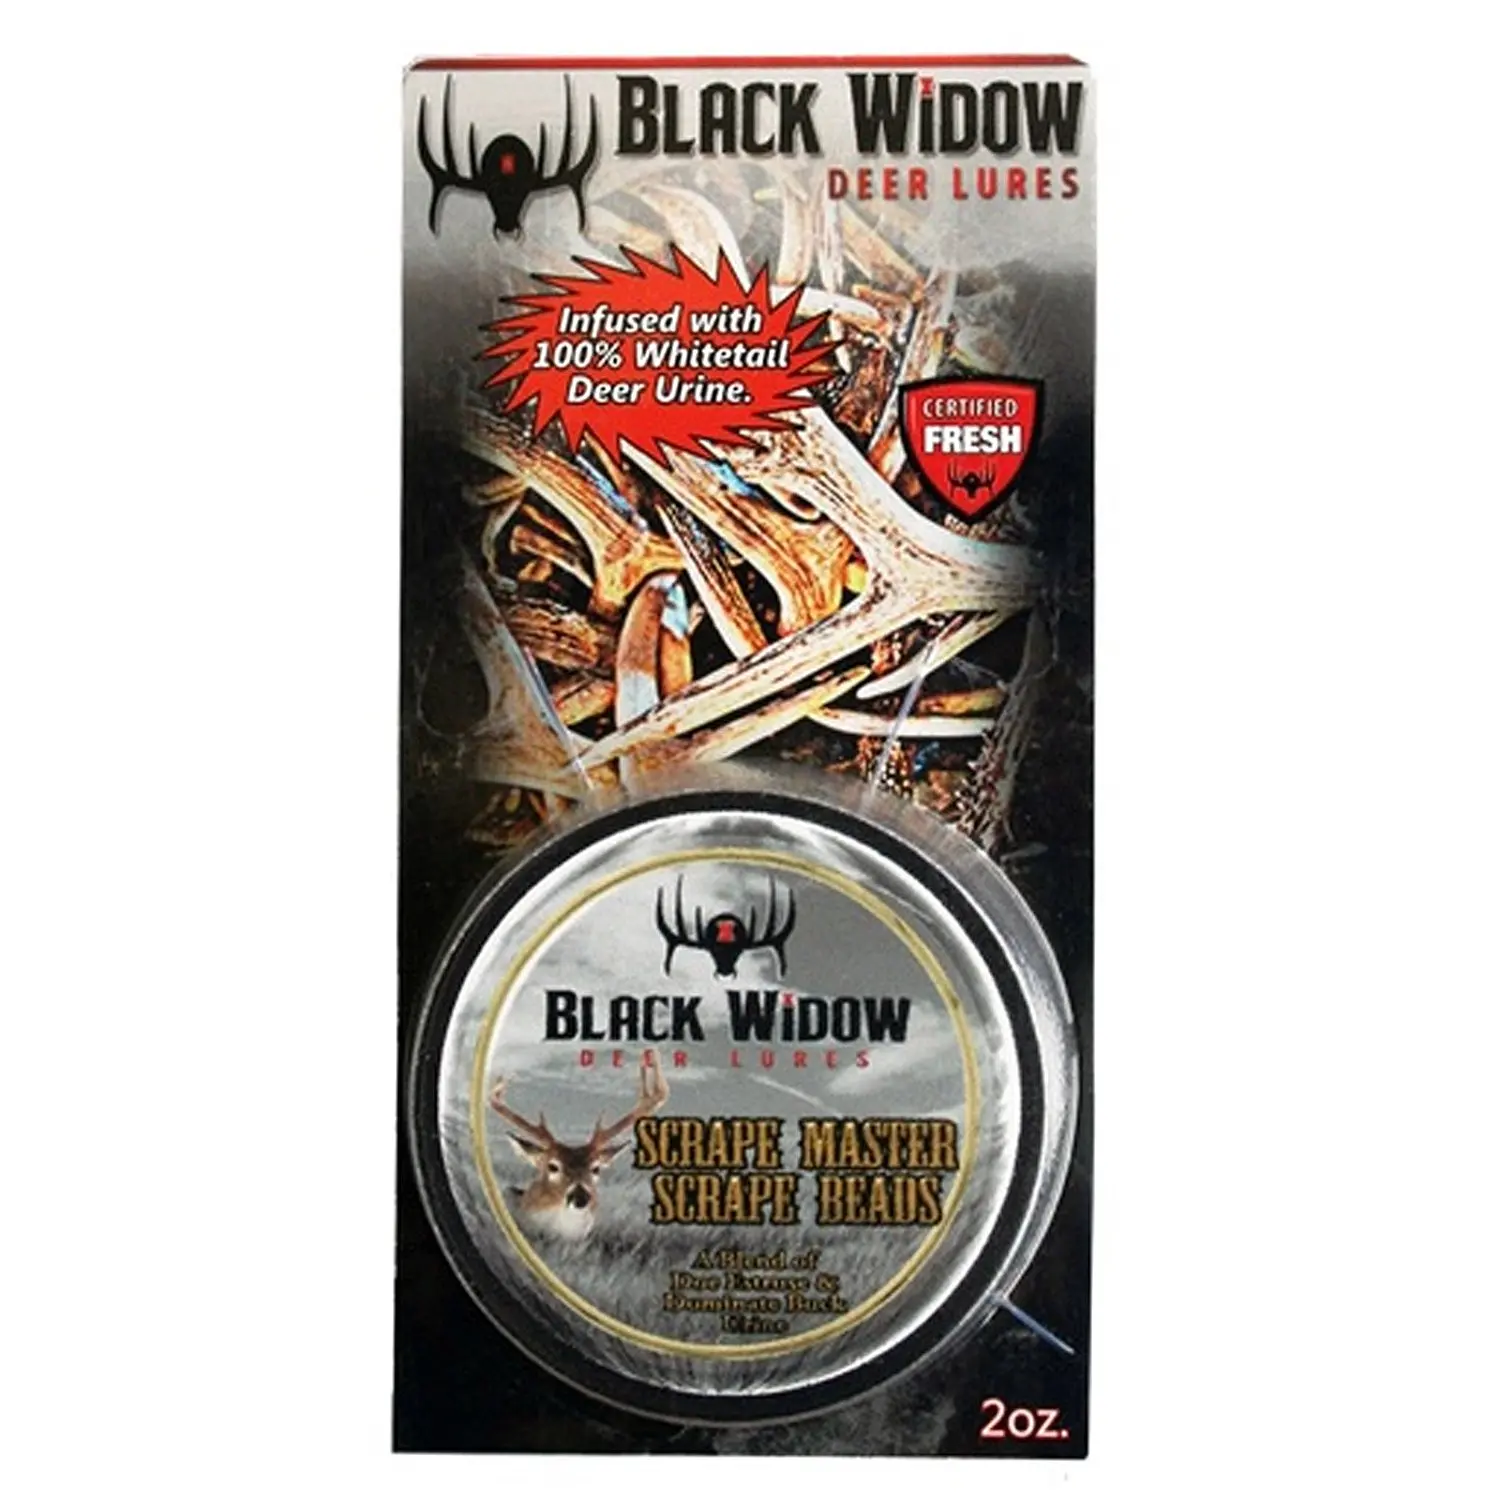 Black widow deer scent reviews